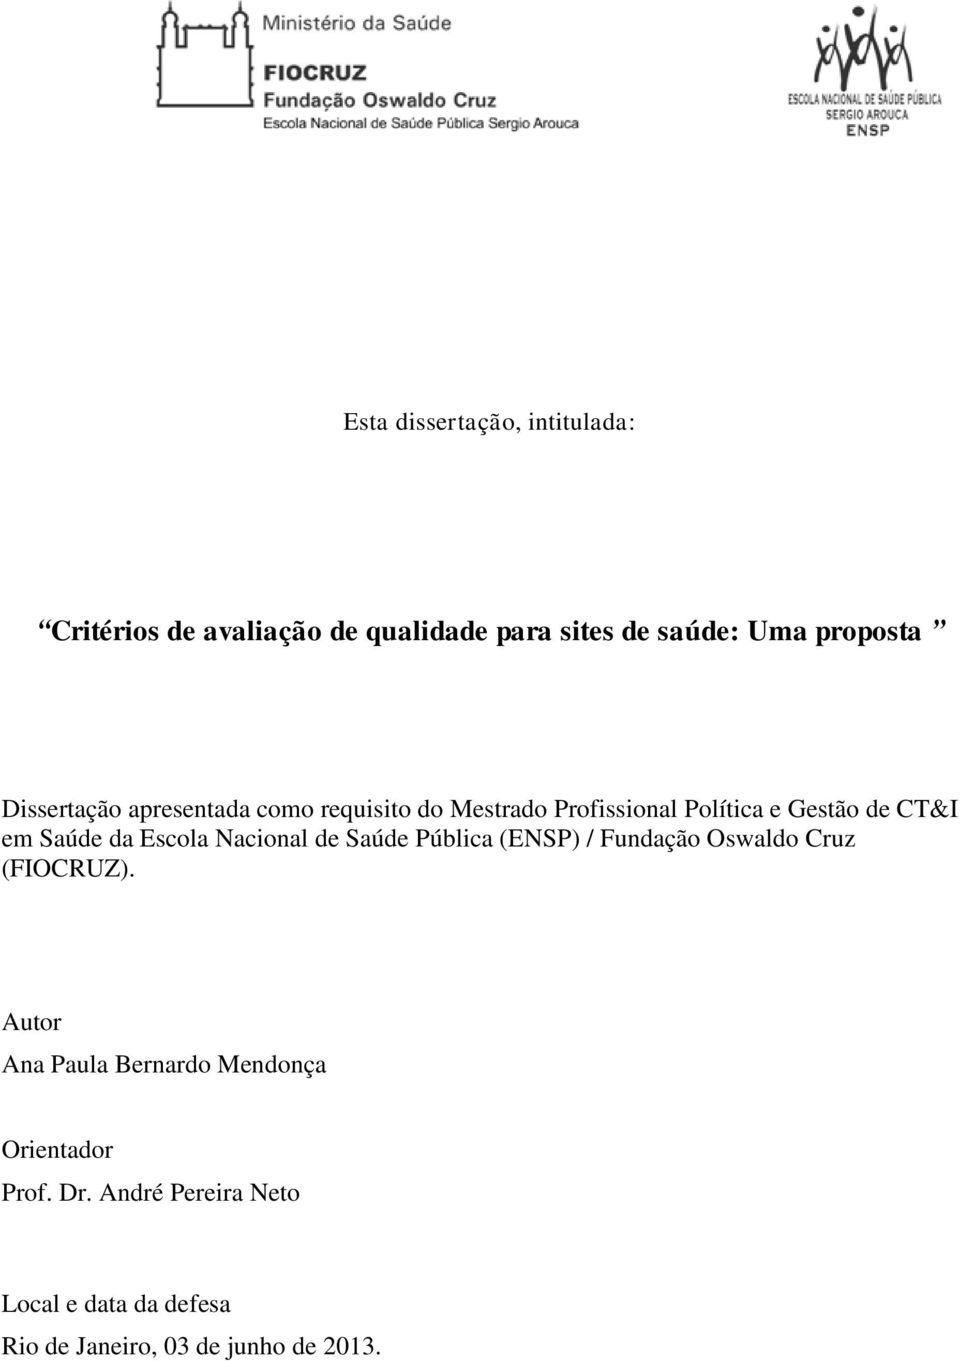 Escola Nacional de Saúde Pública (ENSP) / Fundação Oswaldo Cruz (FIOCRUZ).